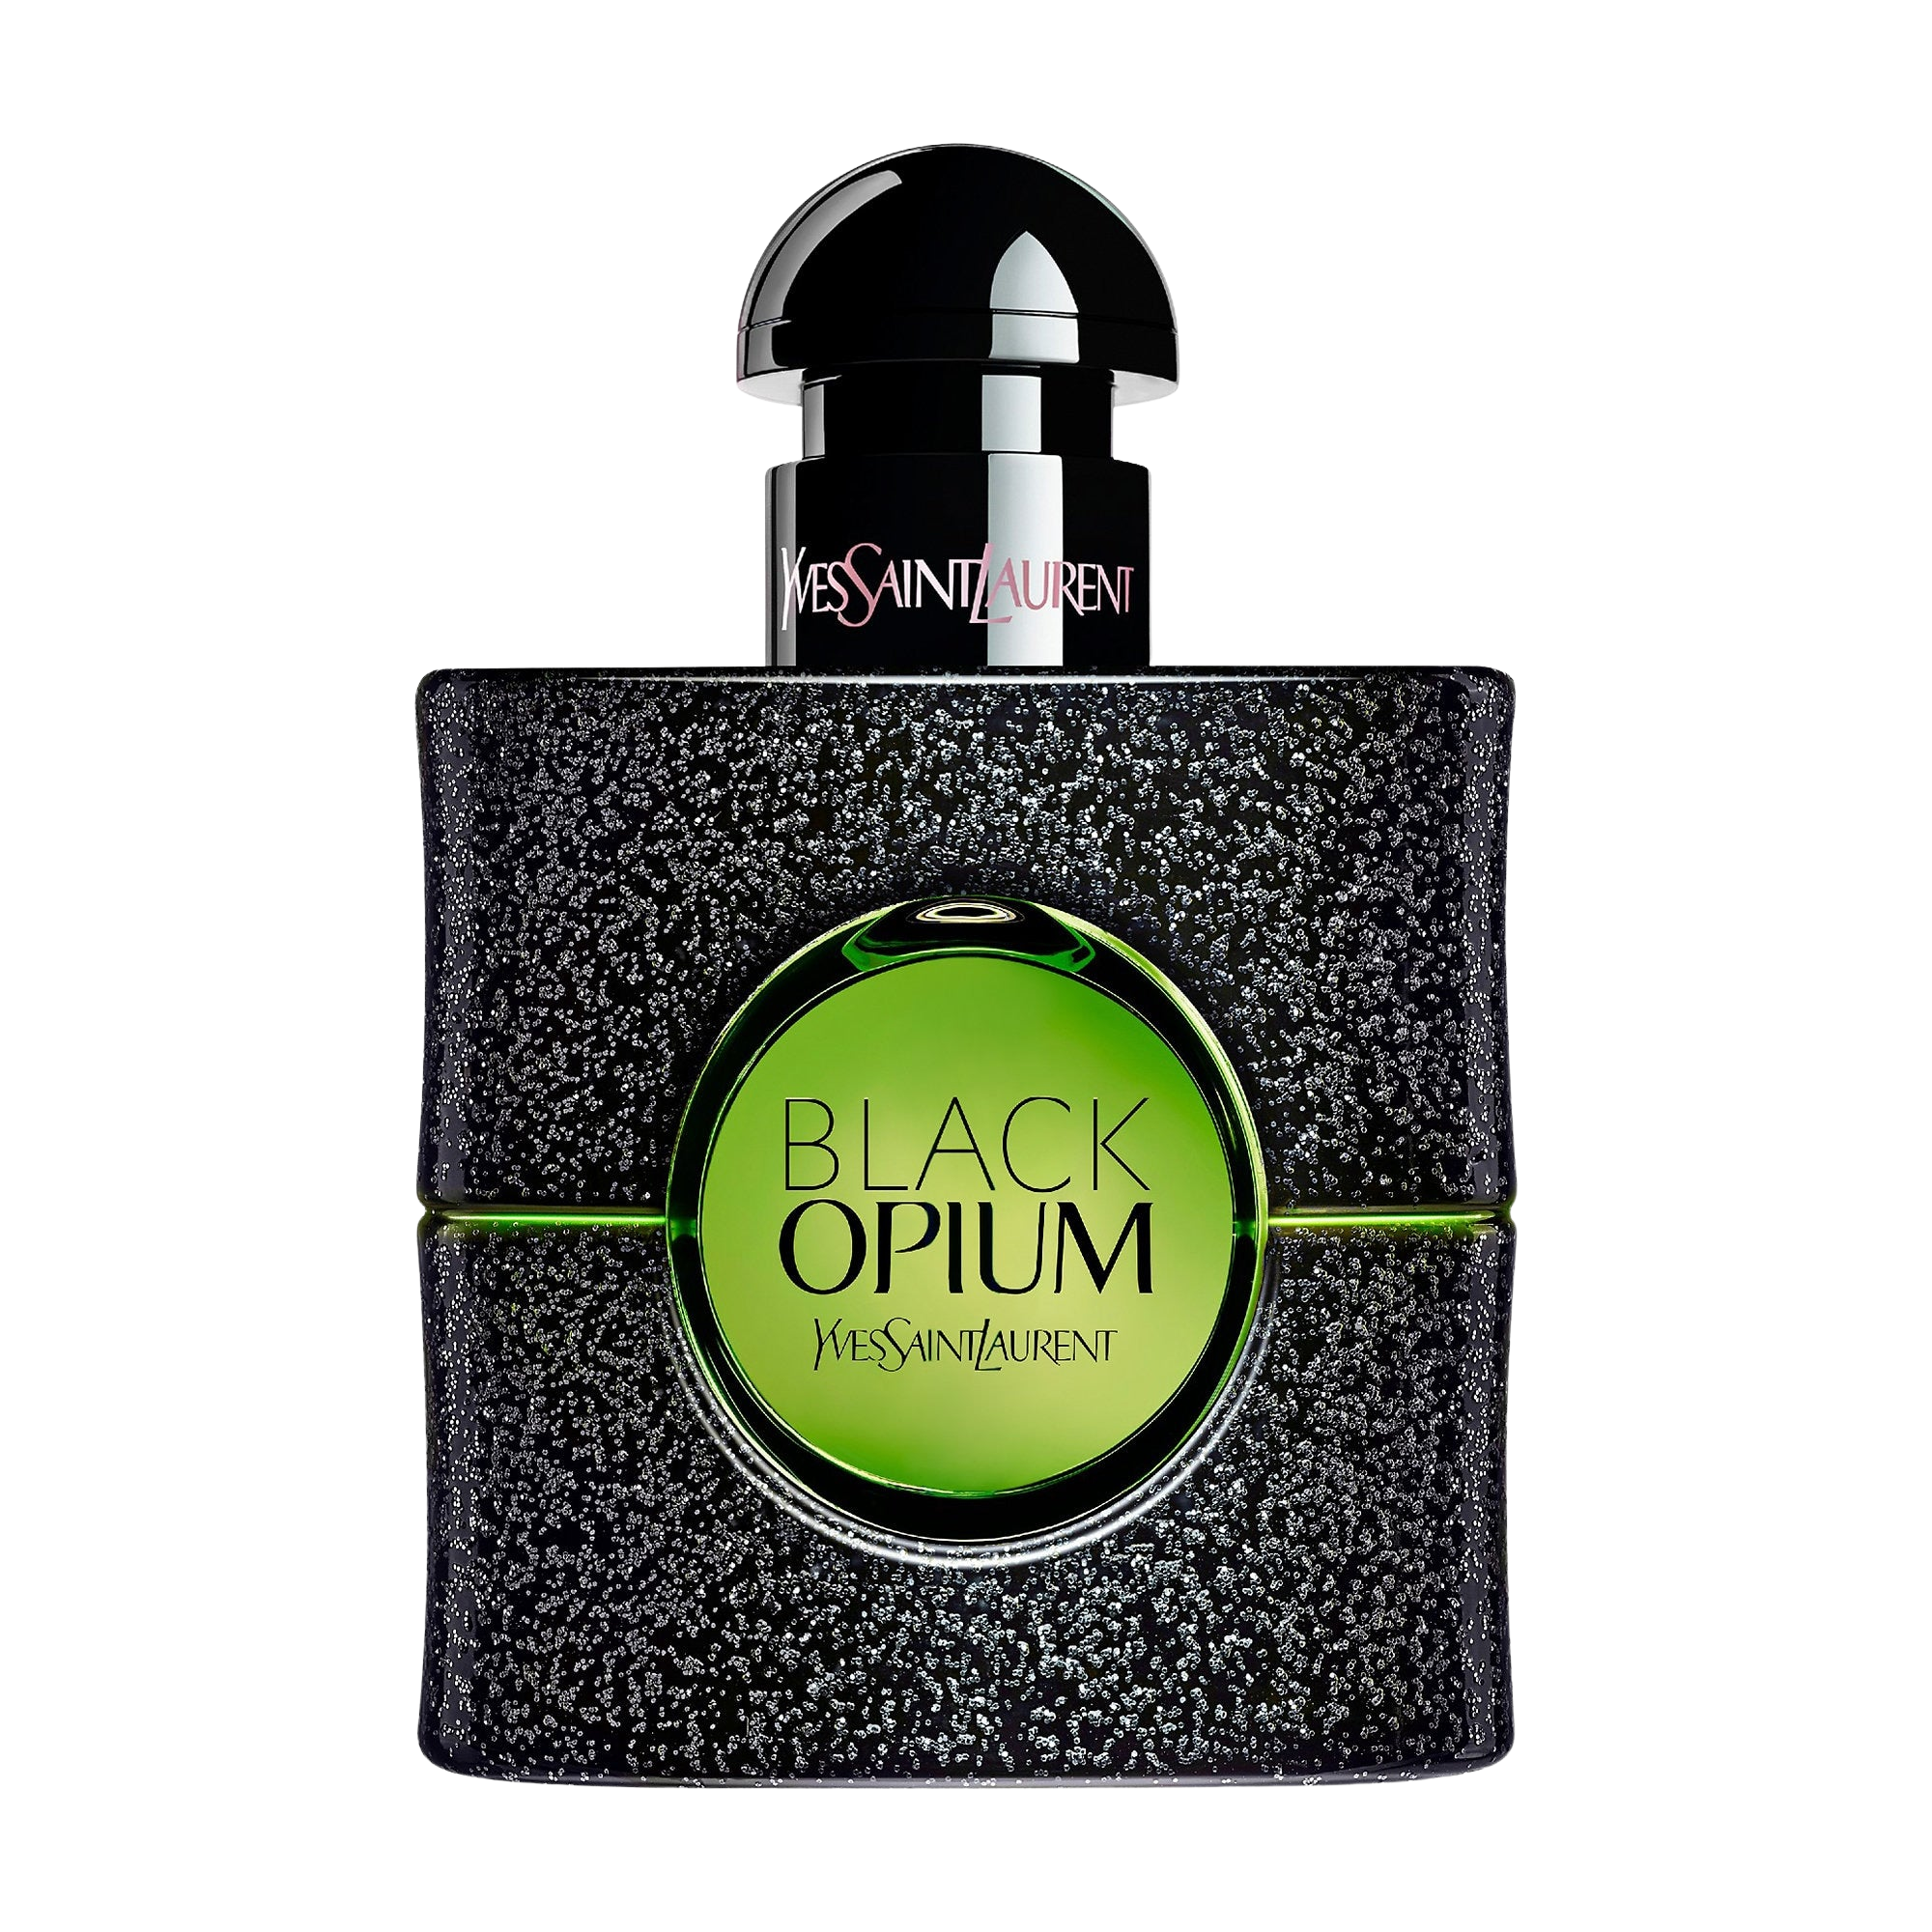 Yves Saint Laurent Black Opium Eau de Parfum Fragrance Spray, 0.33